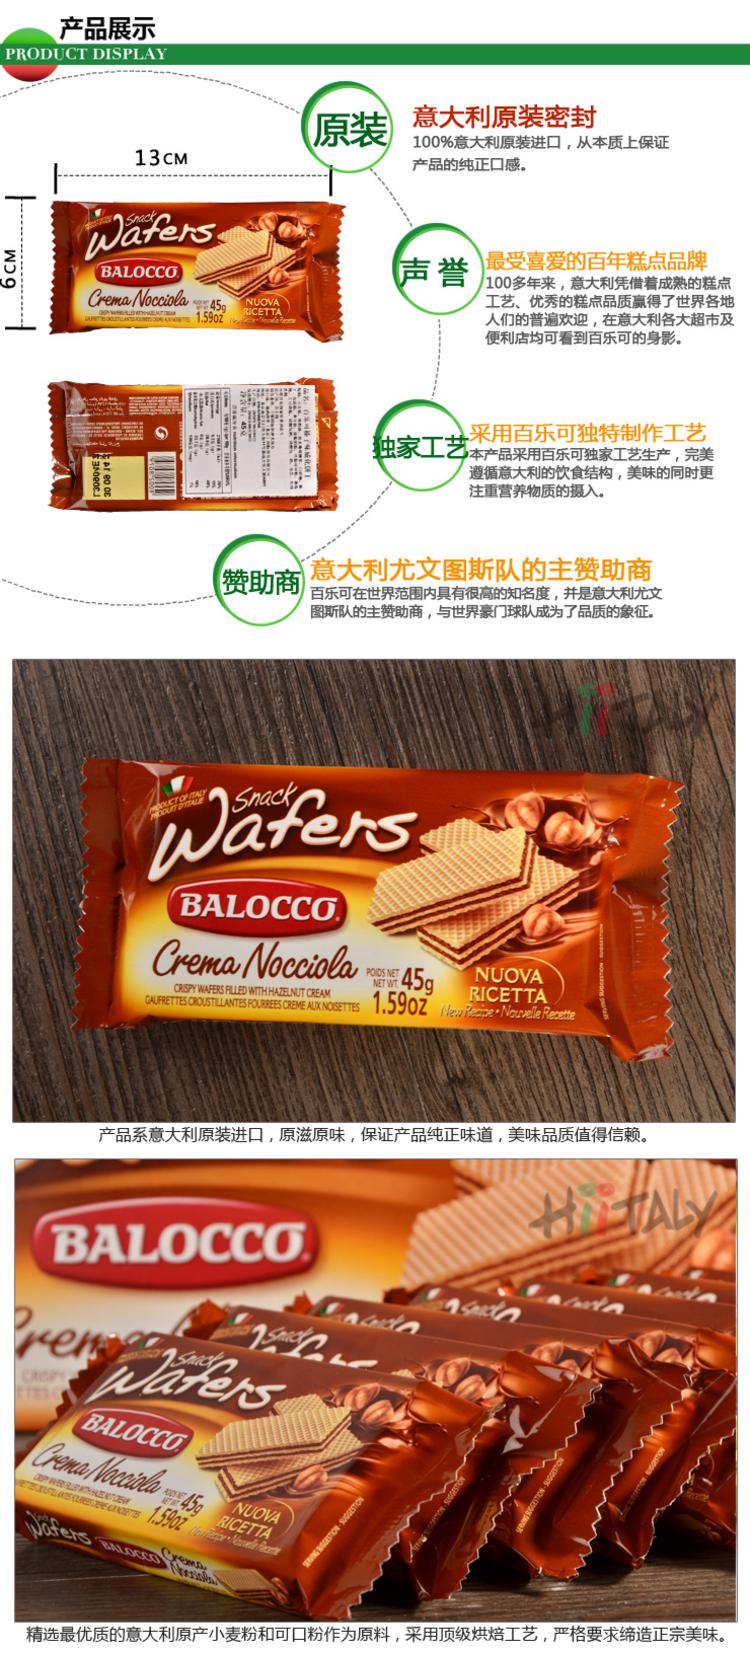 【淘最意大利】百乐可Balocco榛子威化饼干45g 意大利进口零食品